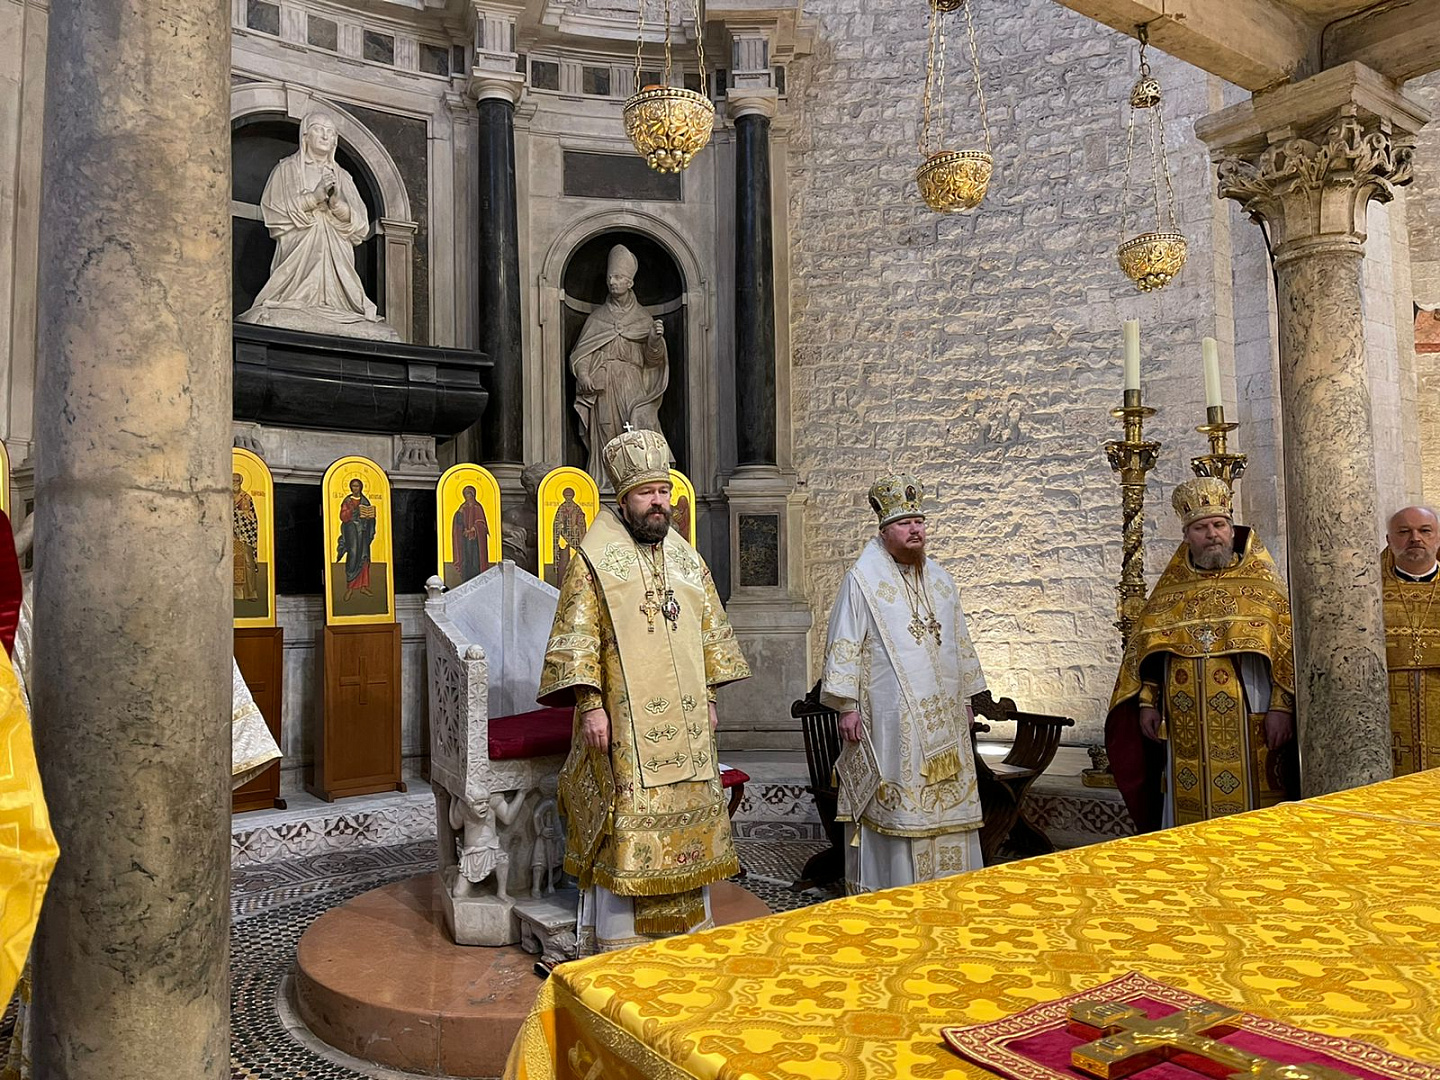 В Бари митрополит Иларион совершил литургию у мощей св. Николая и встретился с архиепископом Бари-Битонто